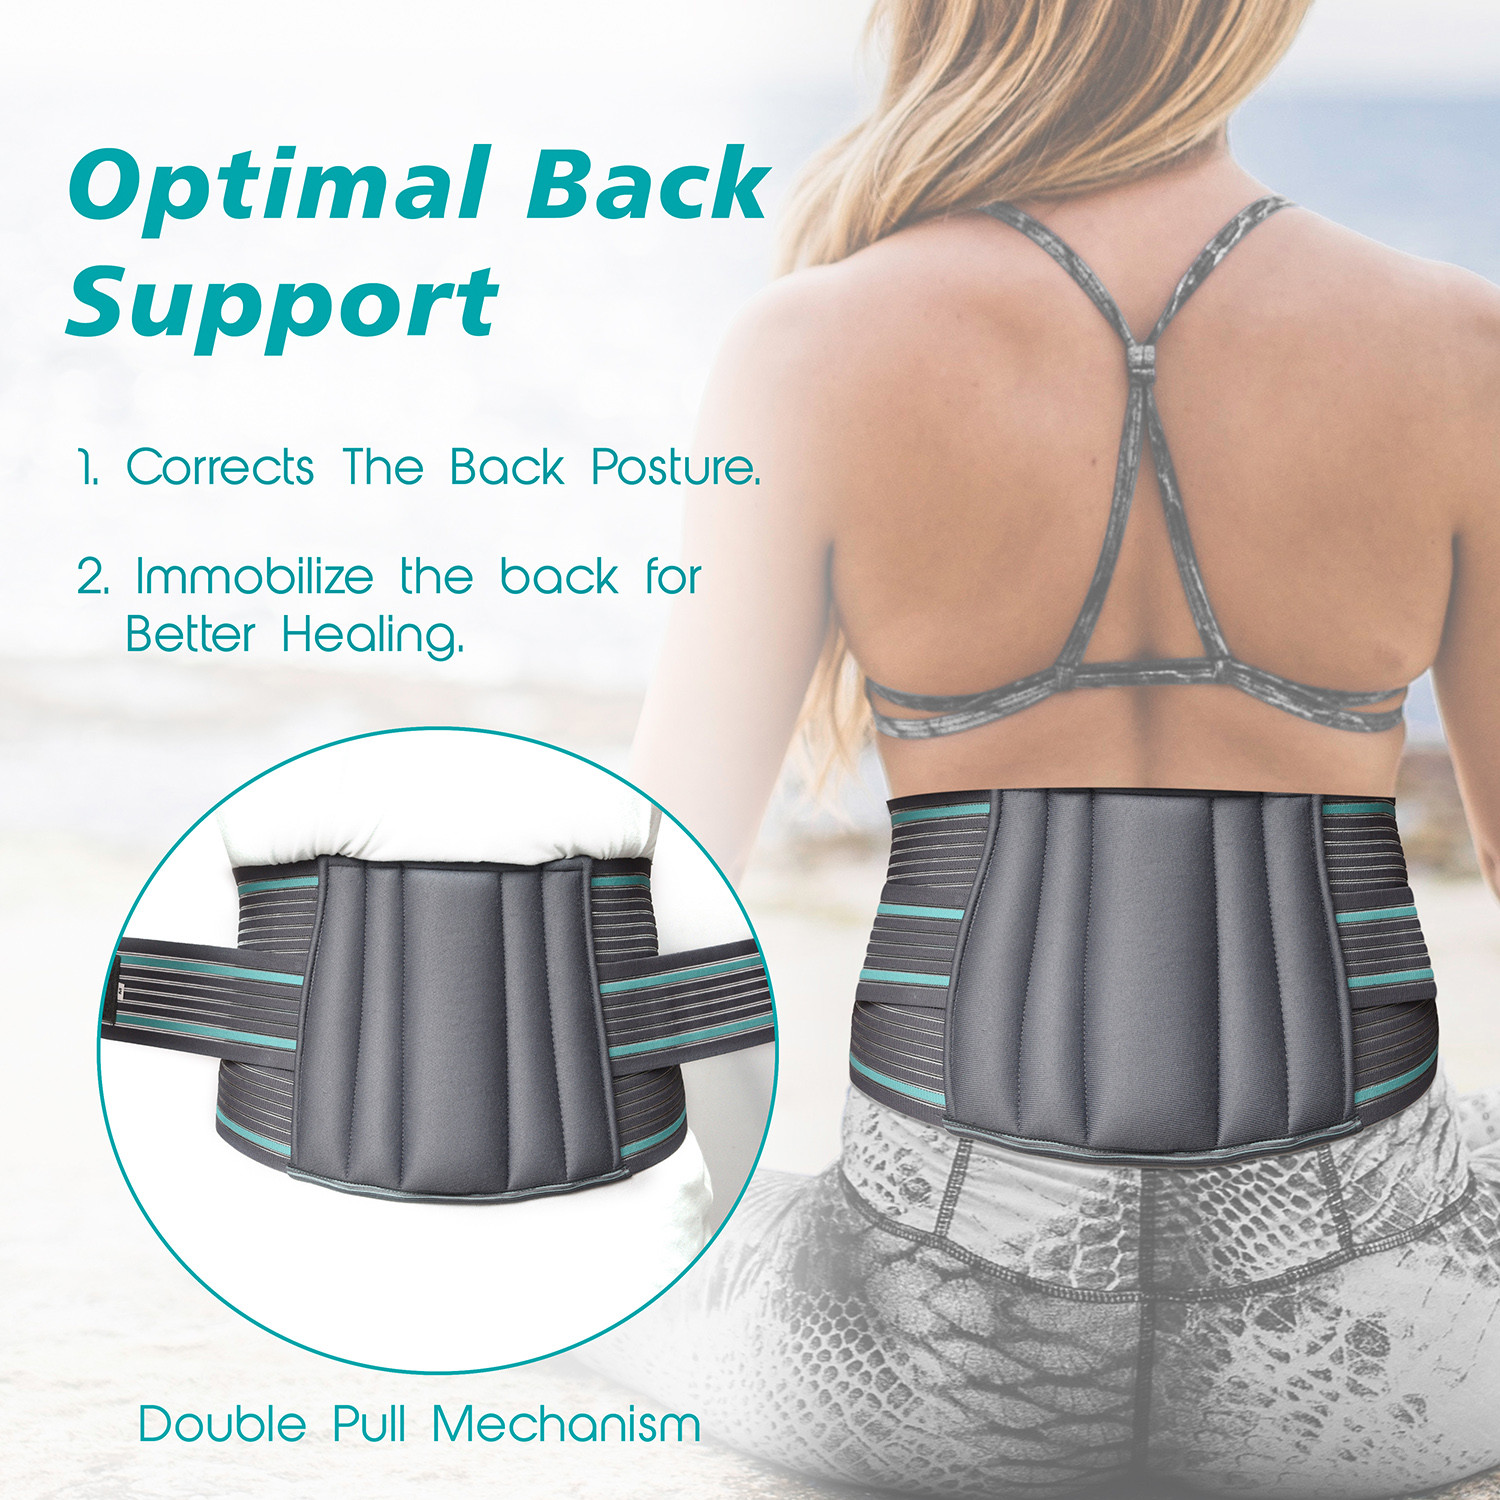 Kuber Industries Lumbar Sacral Belt | Spondylitis Back Pain Belt | Pregnancy Belt | Contoured Belt | Fat Reduction Belt | Lumbo Sacral Belt | Size-L | Gray